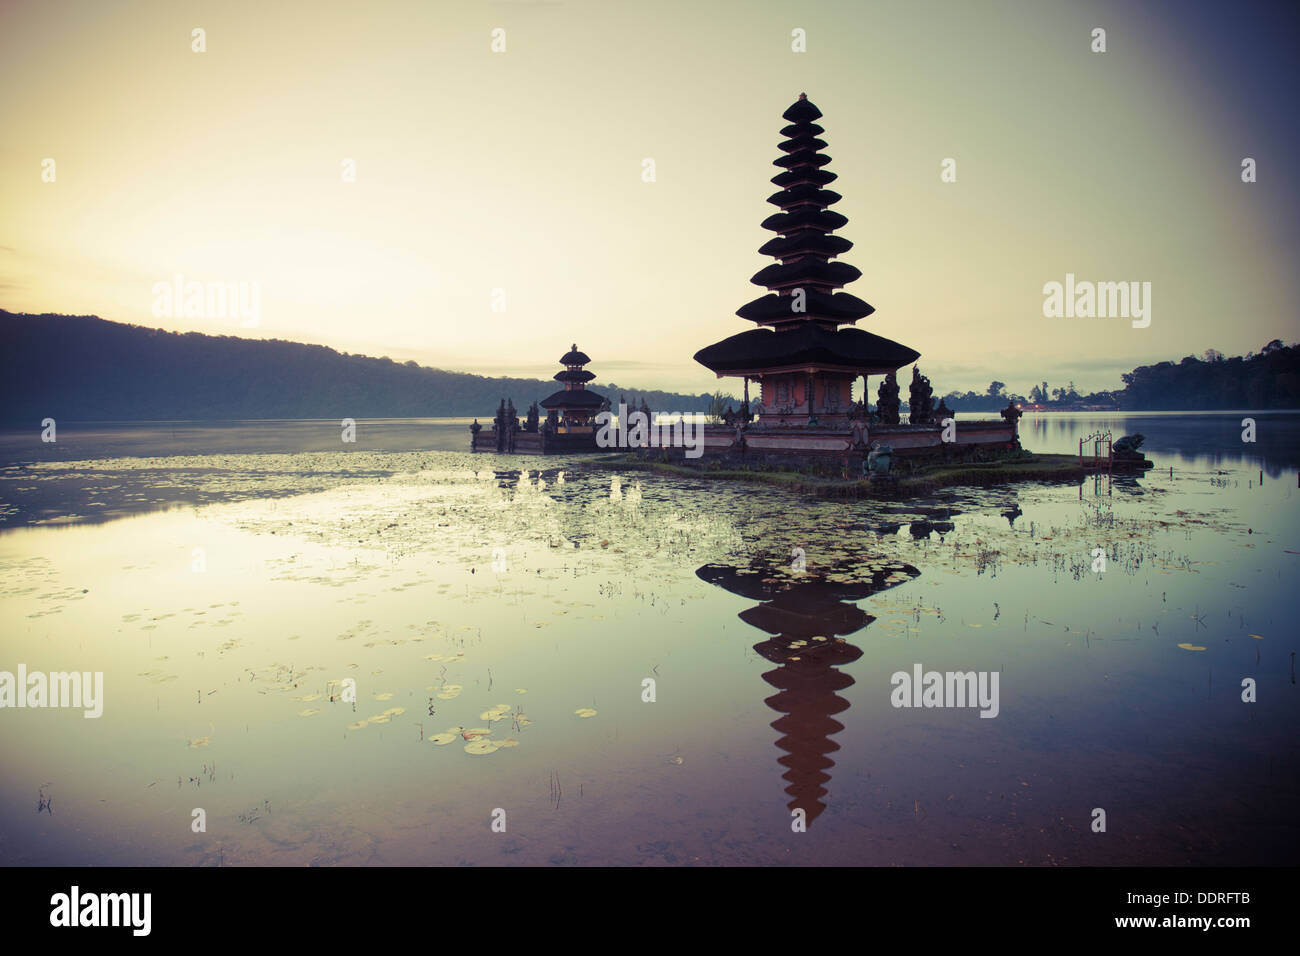 Indonesia, Bali, Bedugul, Pura Ulun Danau Bratan Temple on Lake Bratan Stock Photo